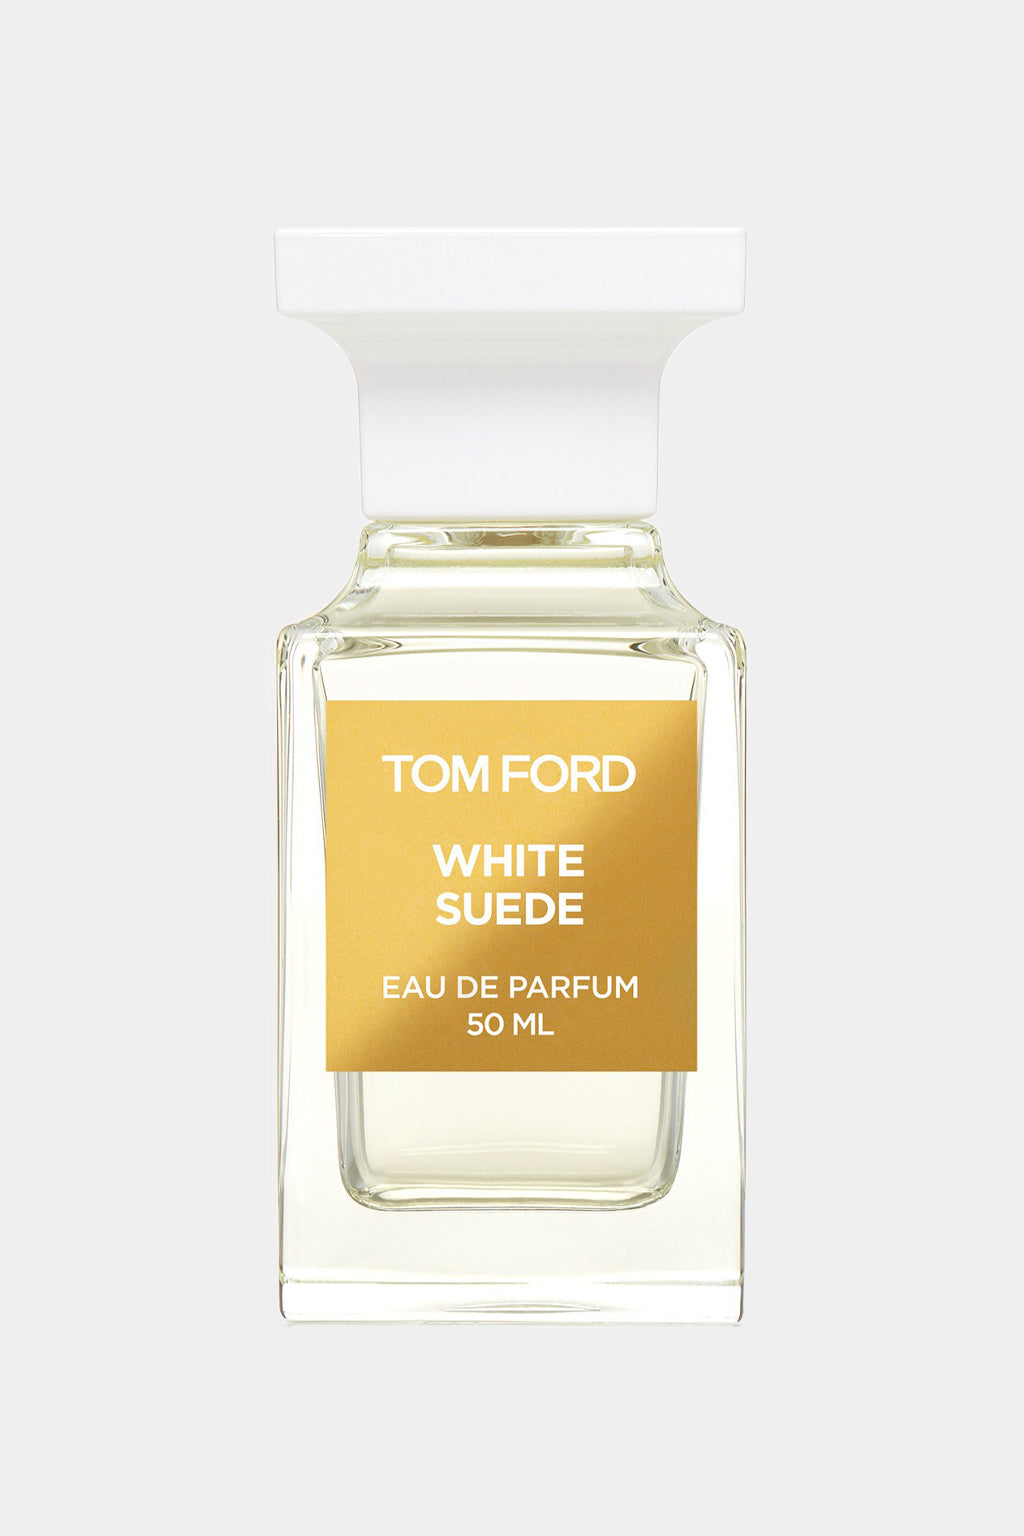 Tom Ford - White Suede Perfume Eau de Parfum